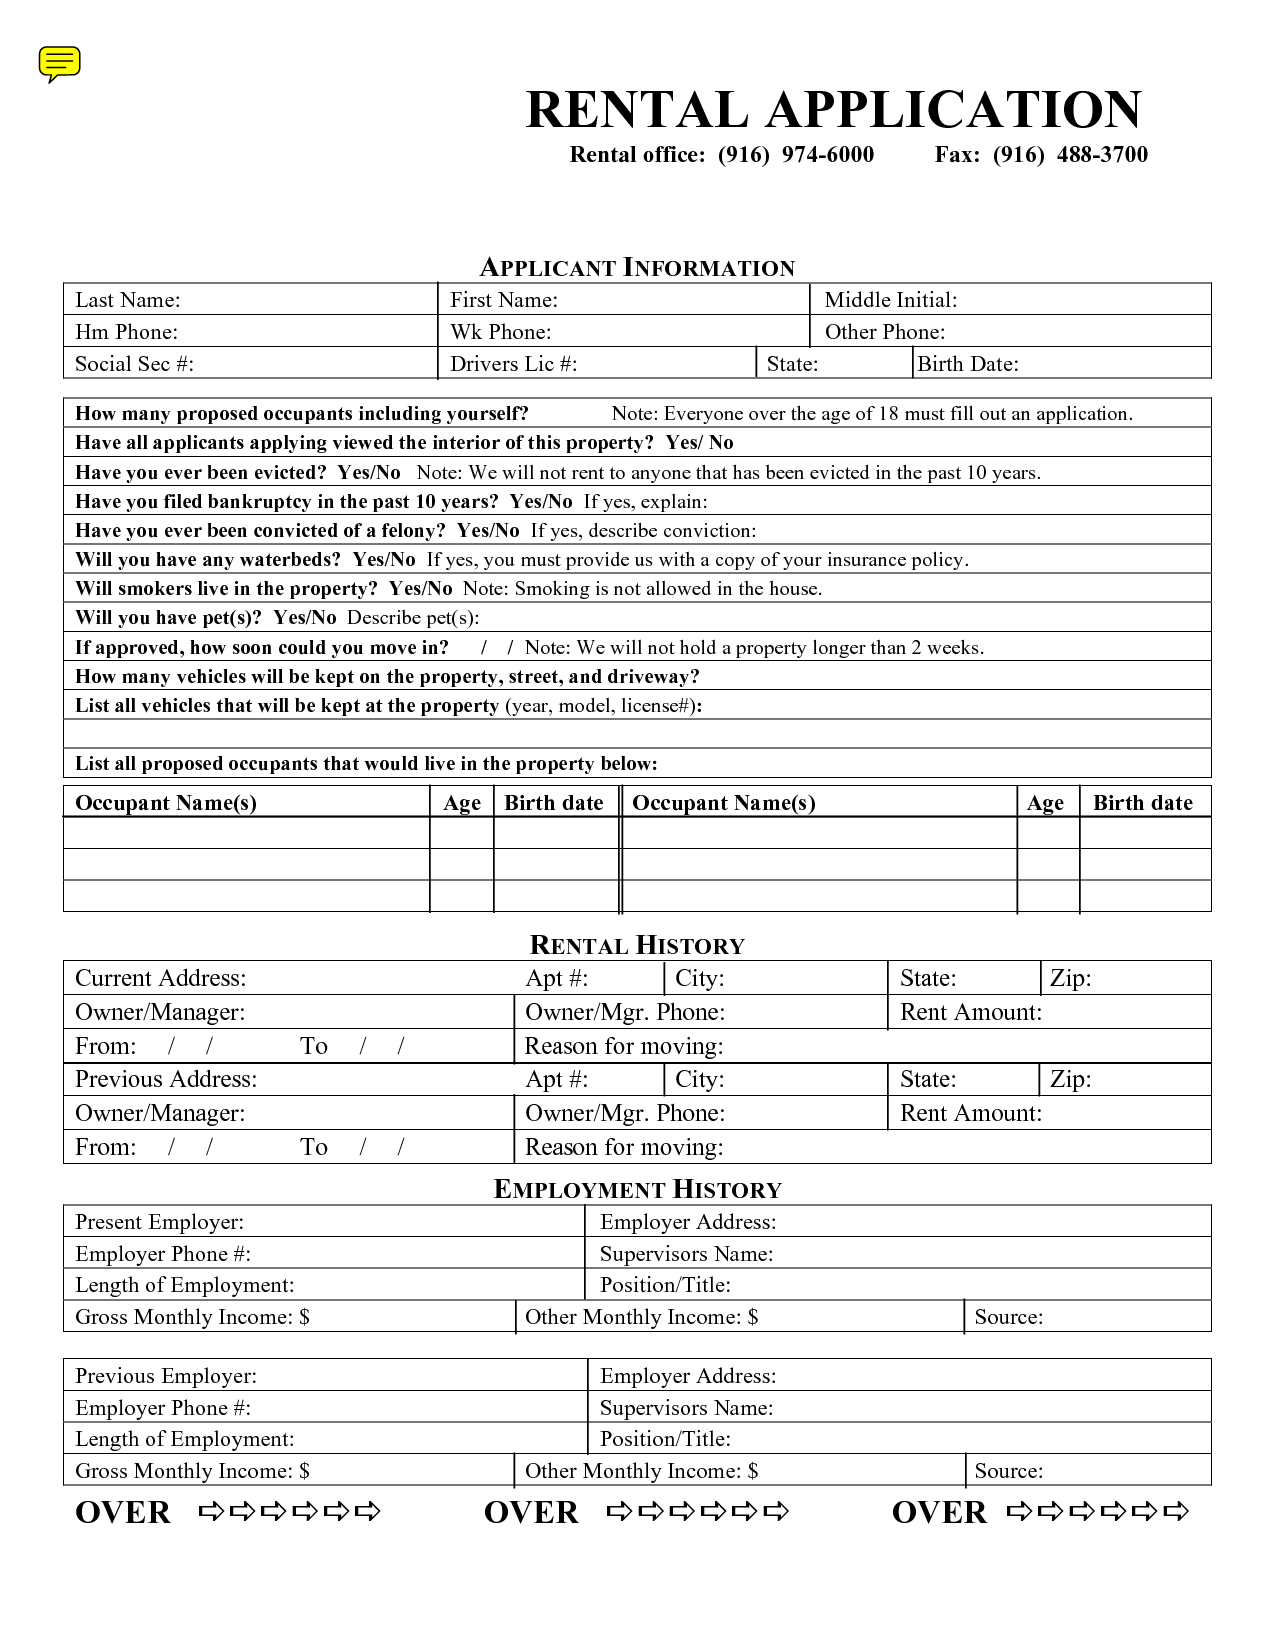 Free Rental Application Formmary_Jmenintigar - House Rental - Free Printable Rental Application Form